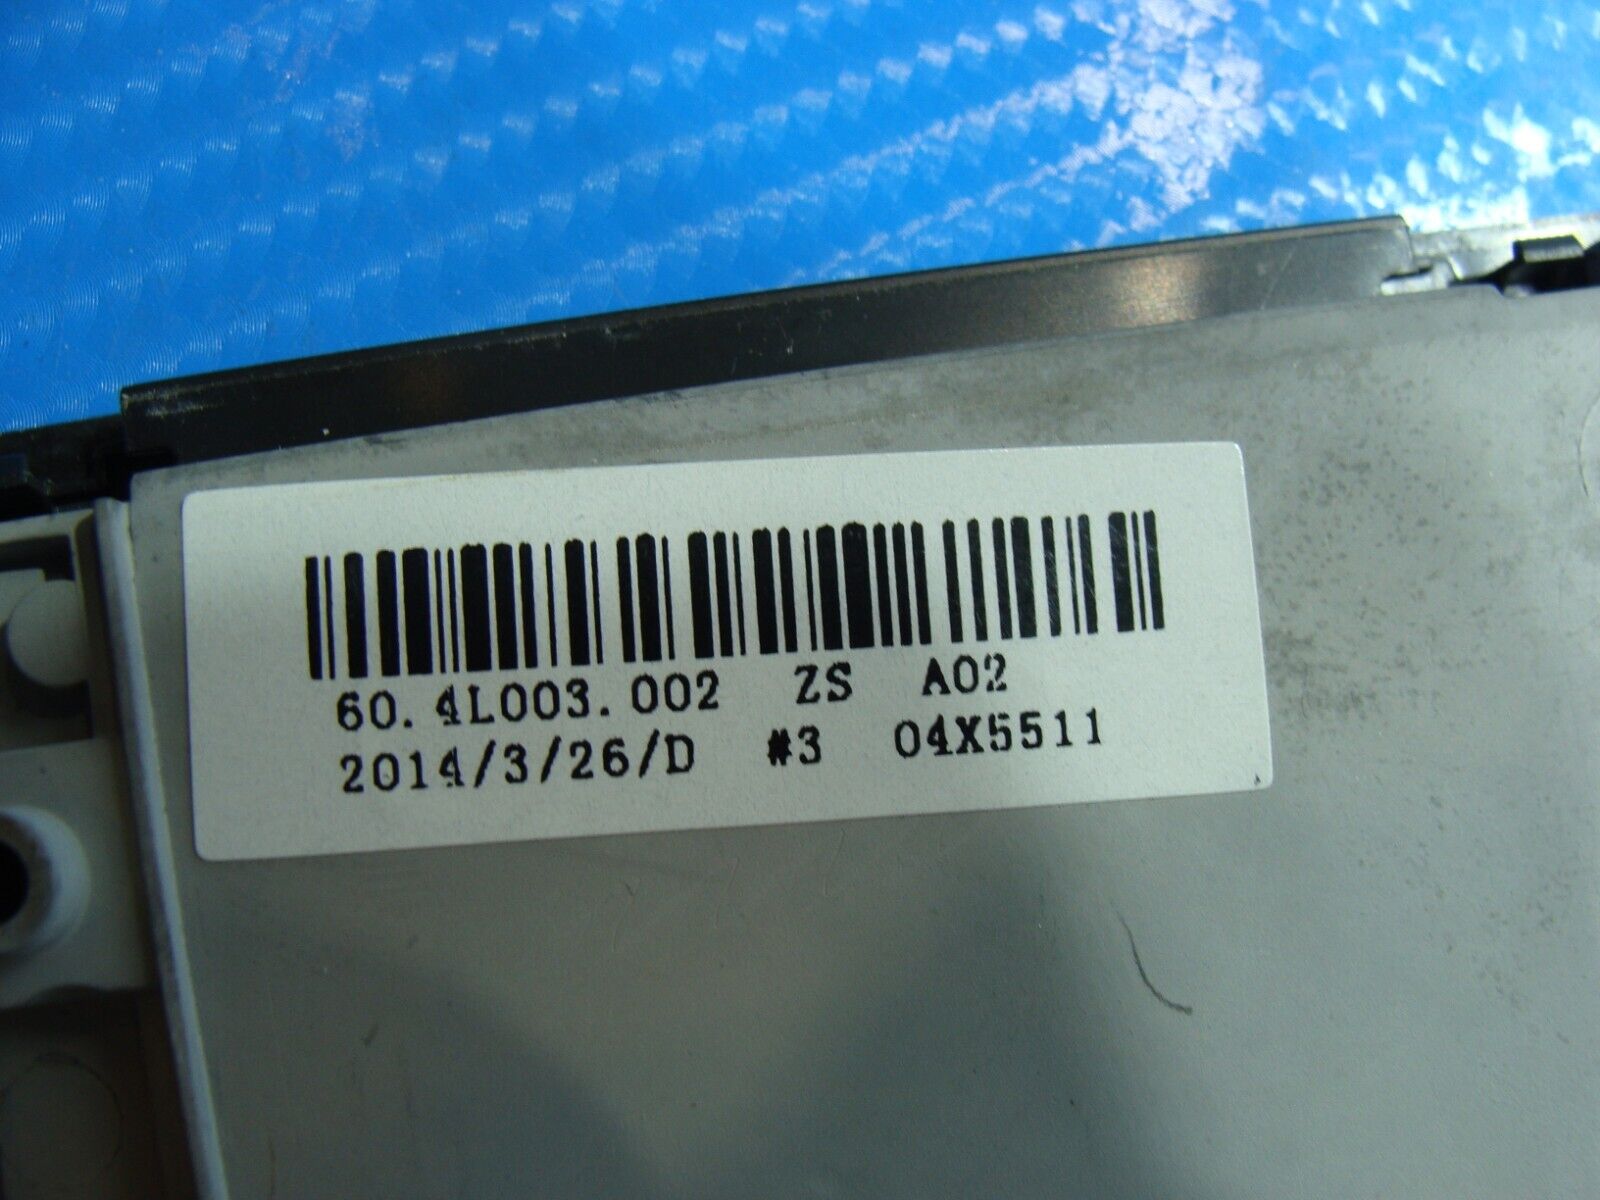 Lenovo ThinkPad T540p 15.6